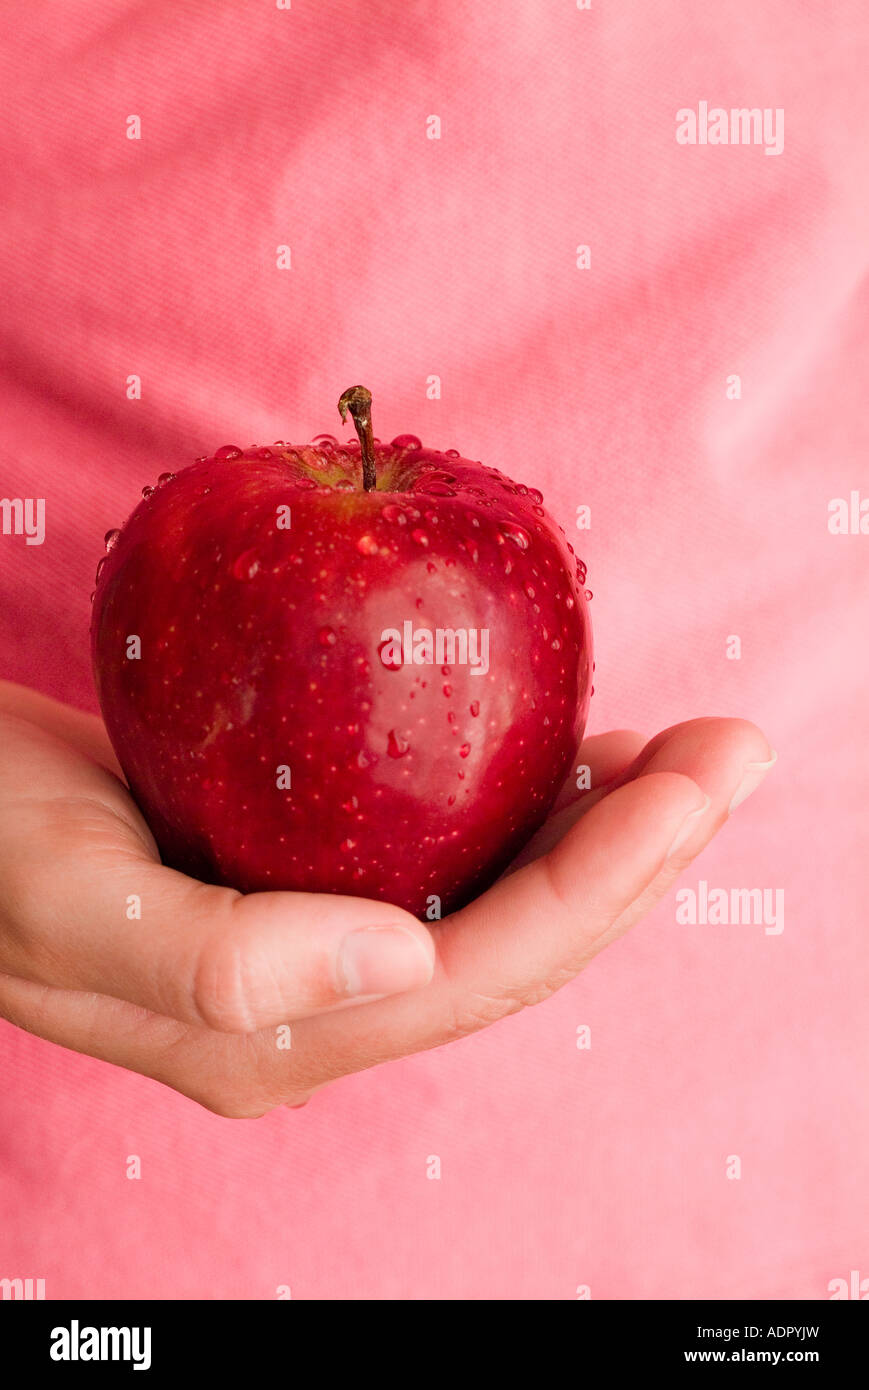 Une femme mûre main tenant une pomme rouge délicieuse à la sinfully bon Banque D'Images